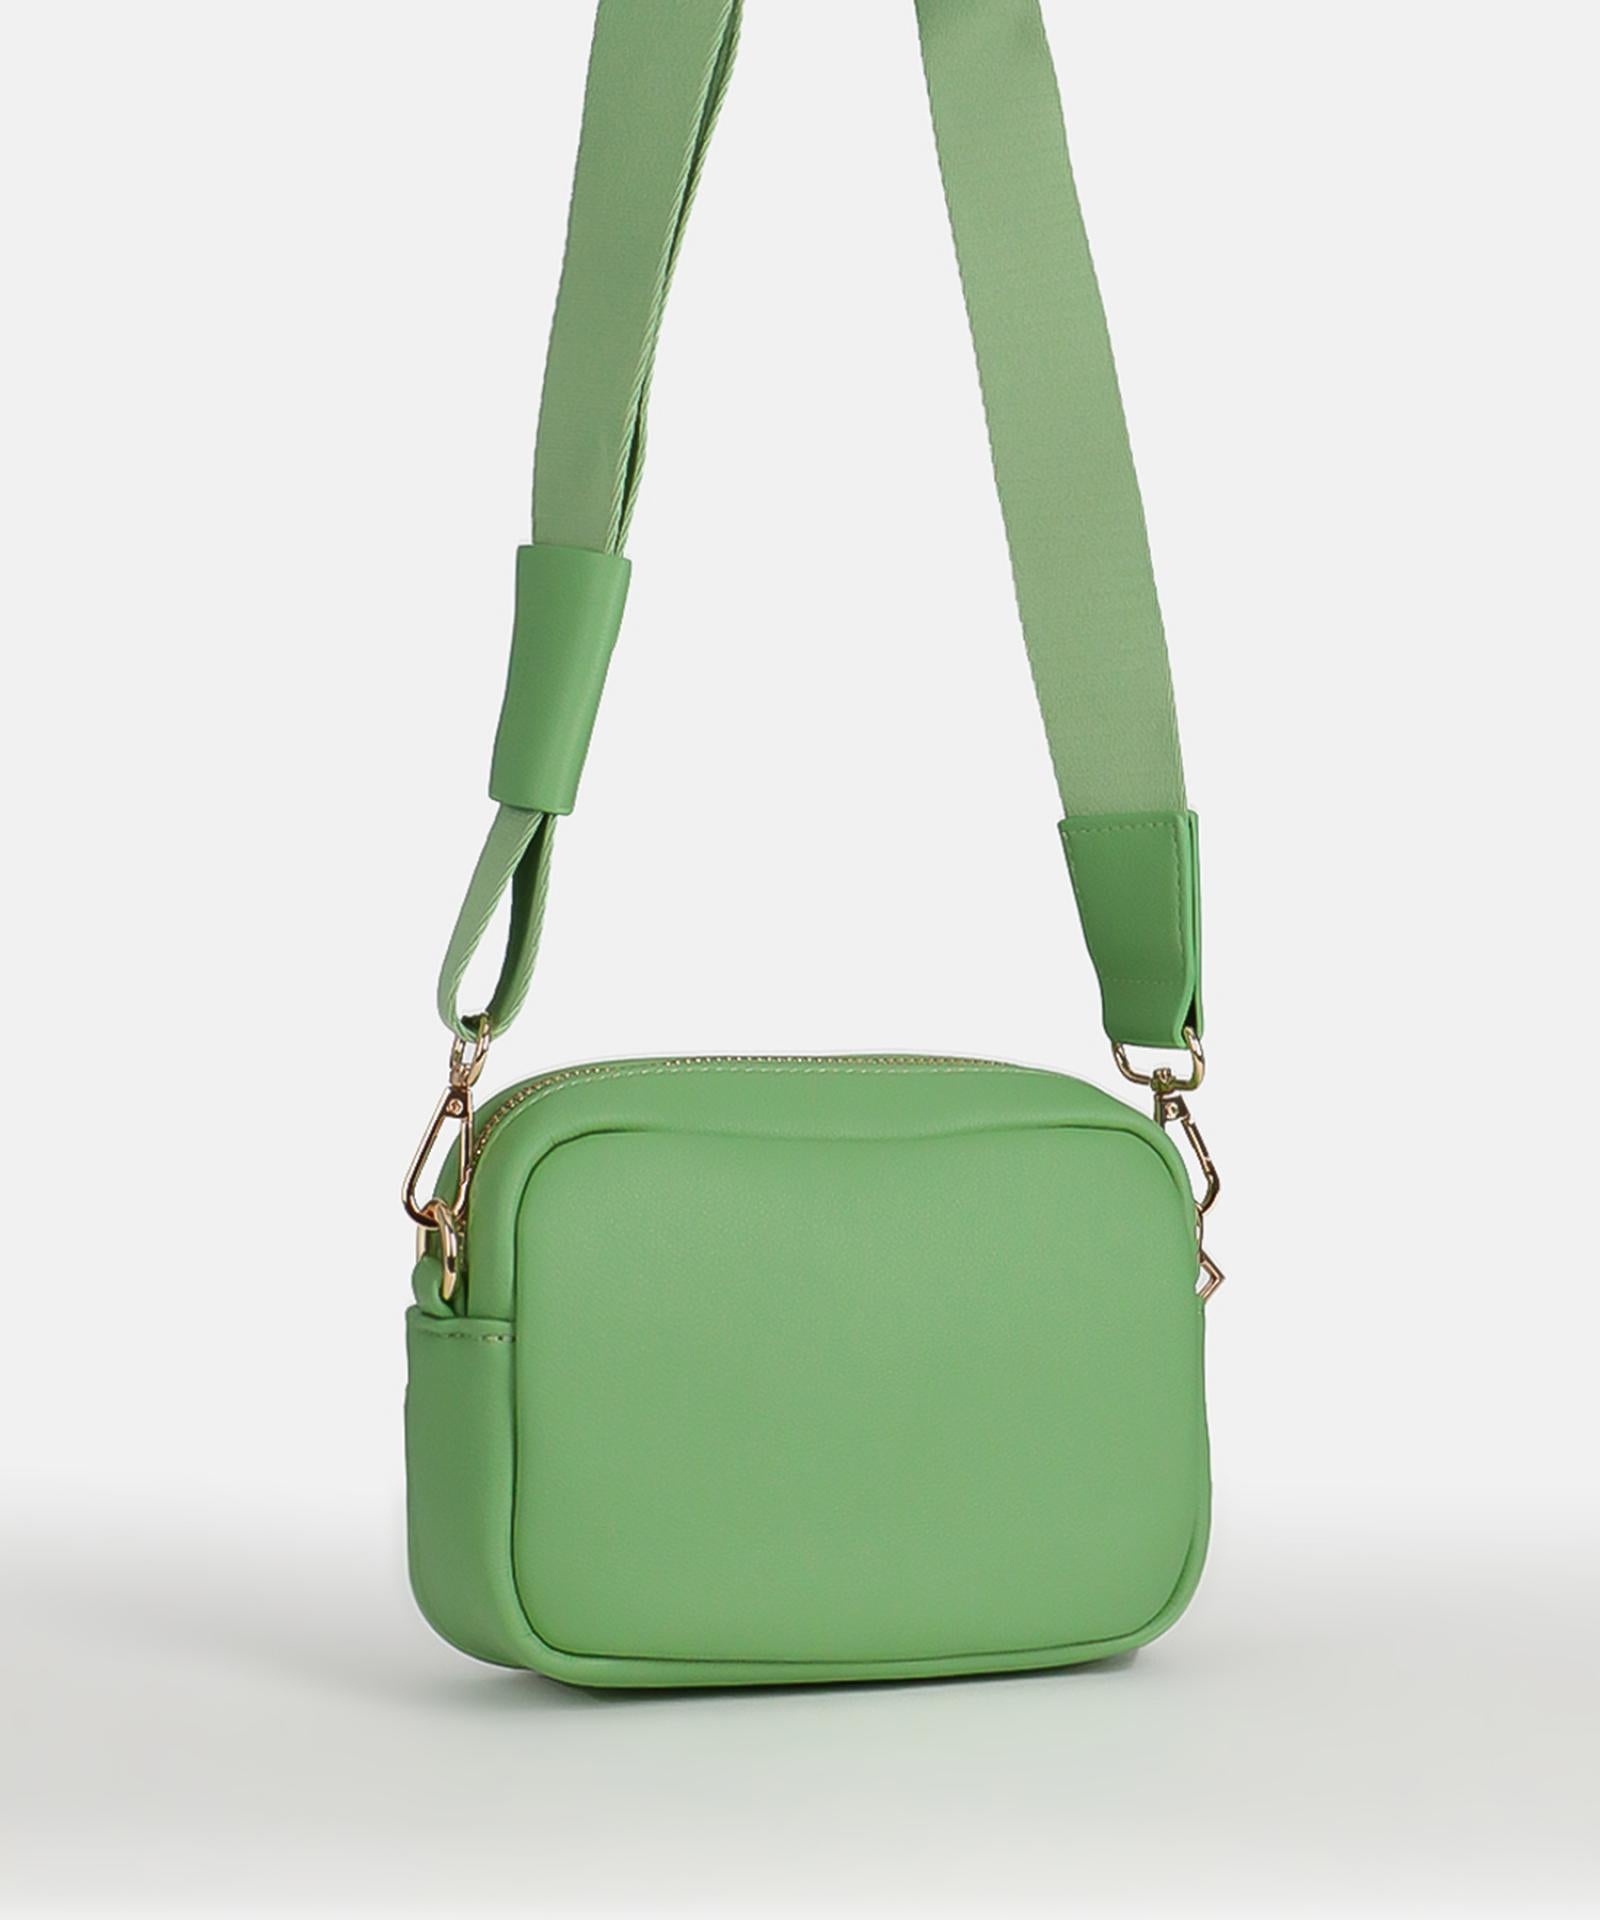 Seidenfelt Heby Small Bag matcha green/gold